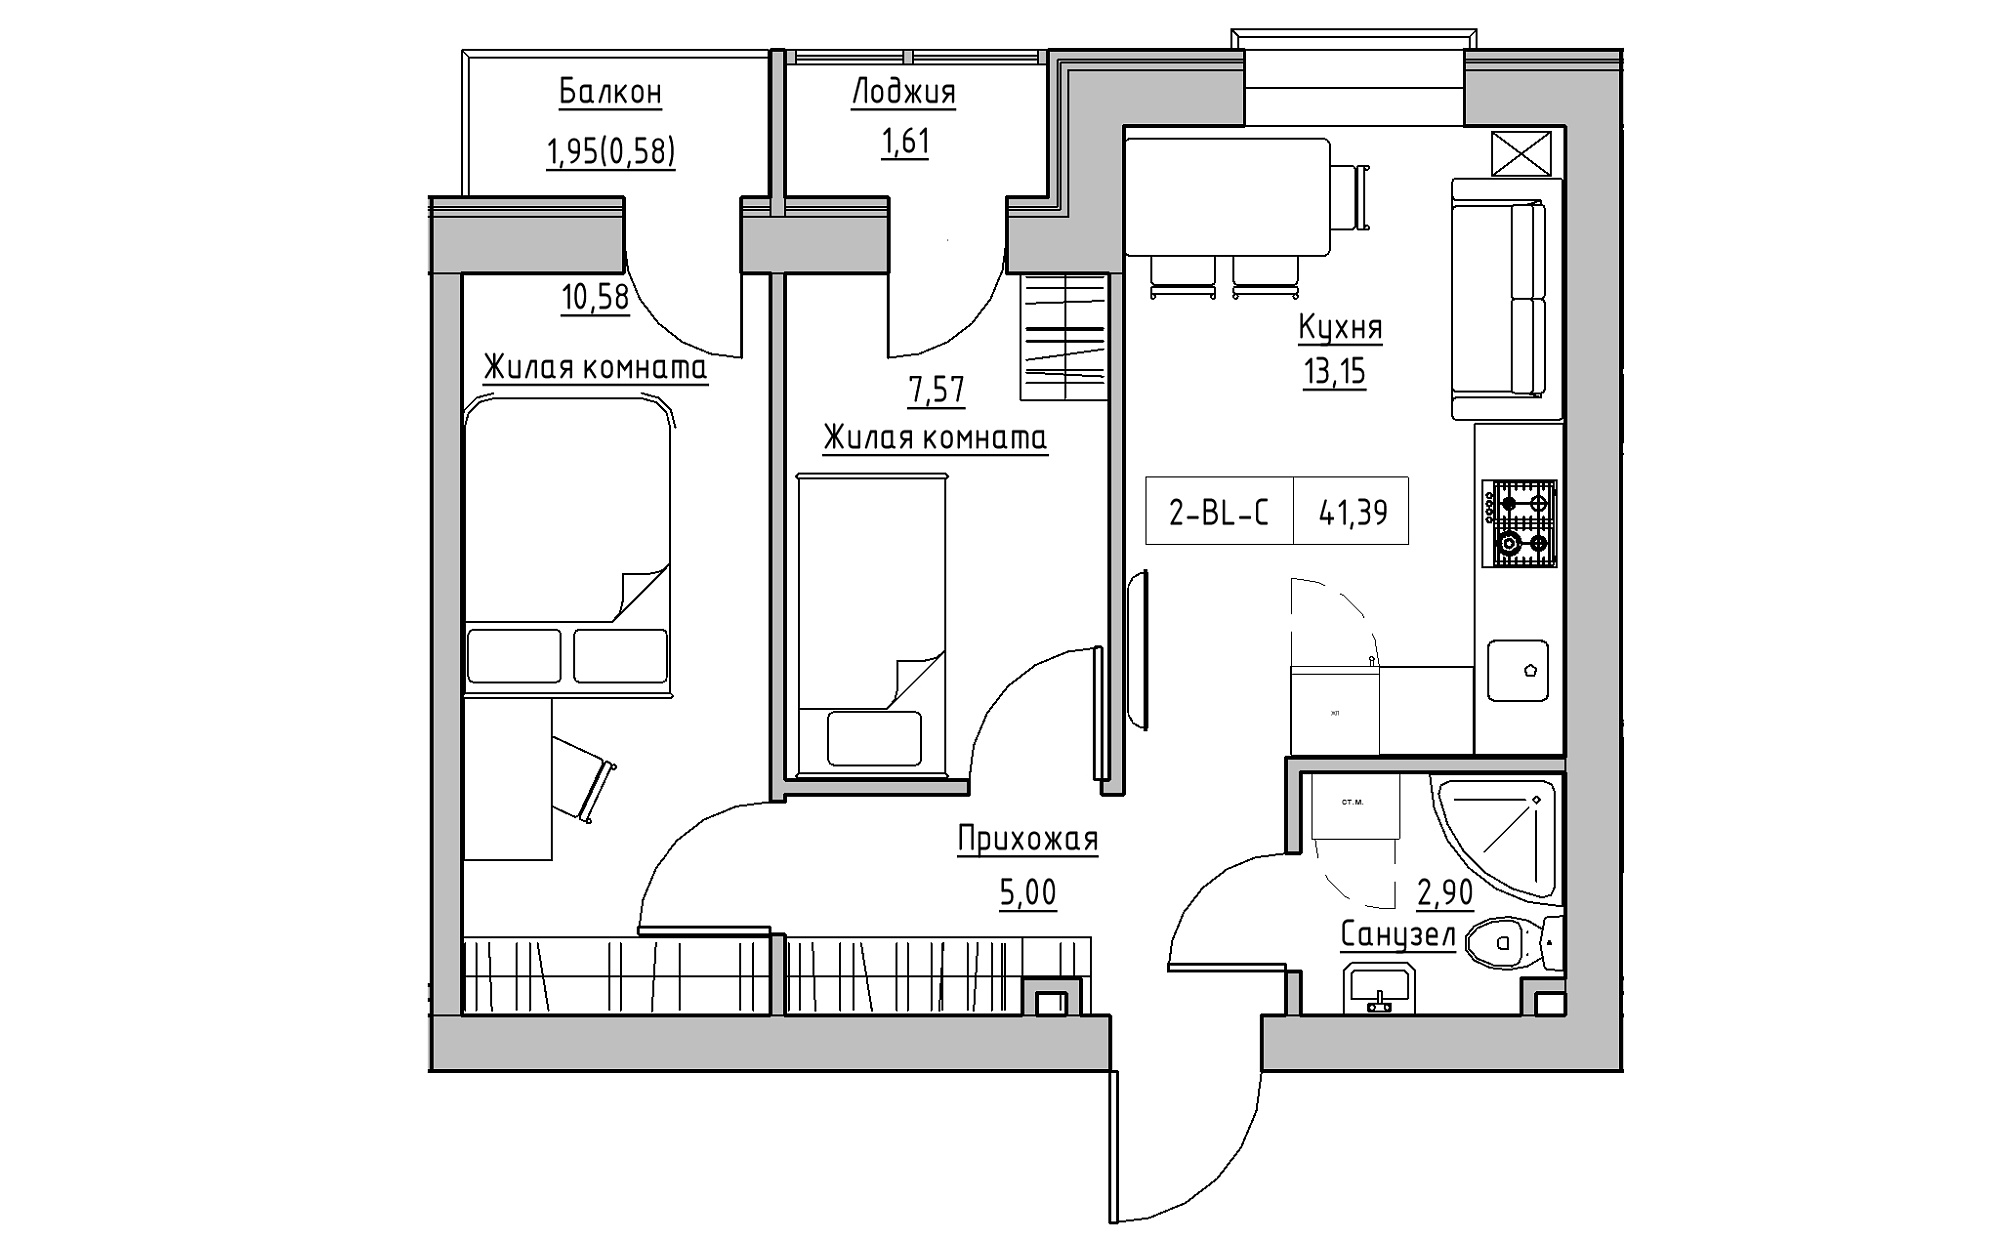 Планировка 2-к квартира площей 41.39м2, KS-022-04/0005.